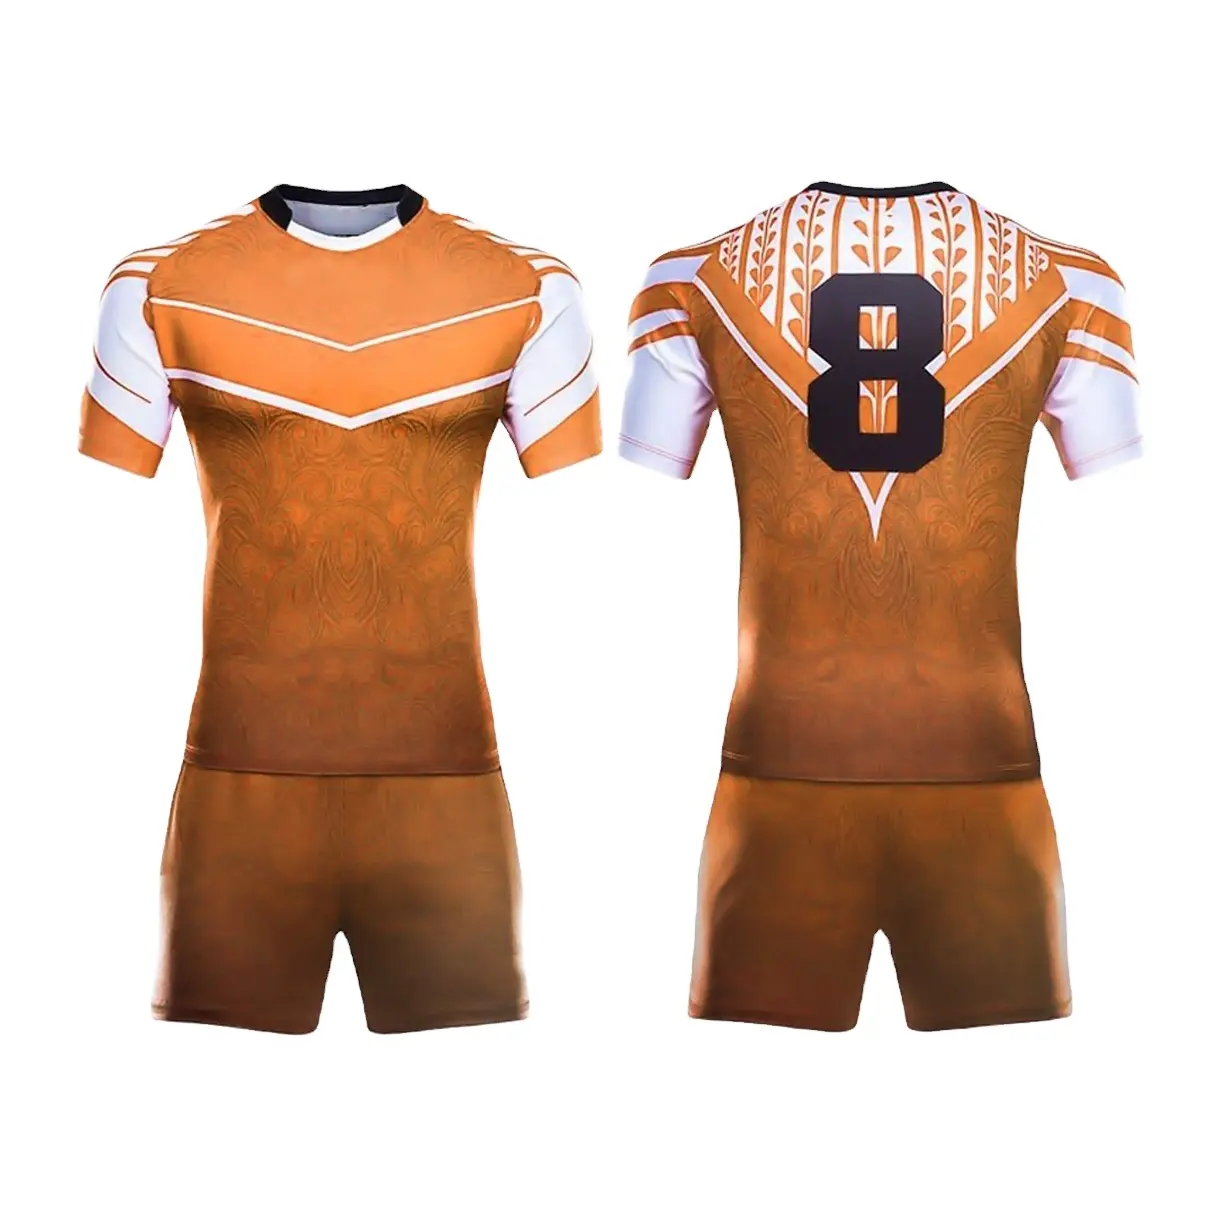 Tam özelleştirme ile Fan hizmeti için özel Retro futbol forması futbol tişörtü ucuz futbol forması